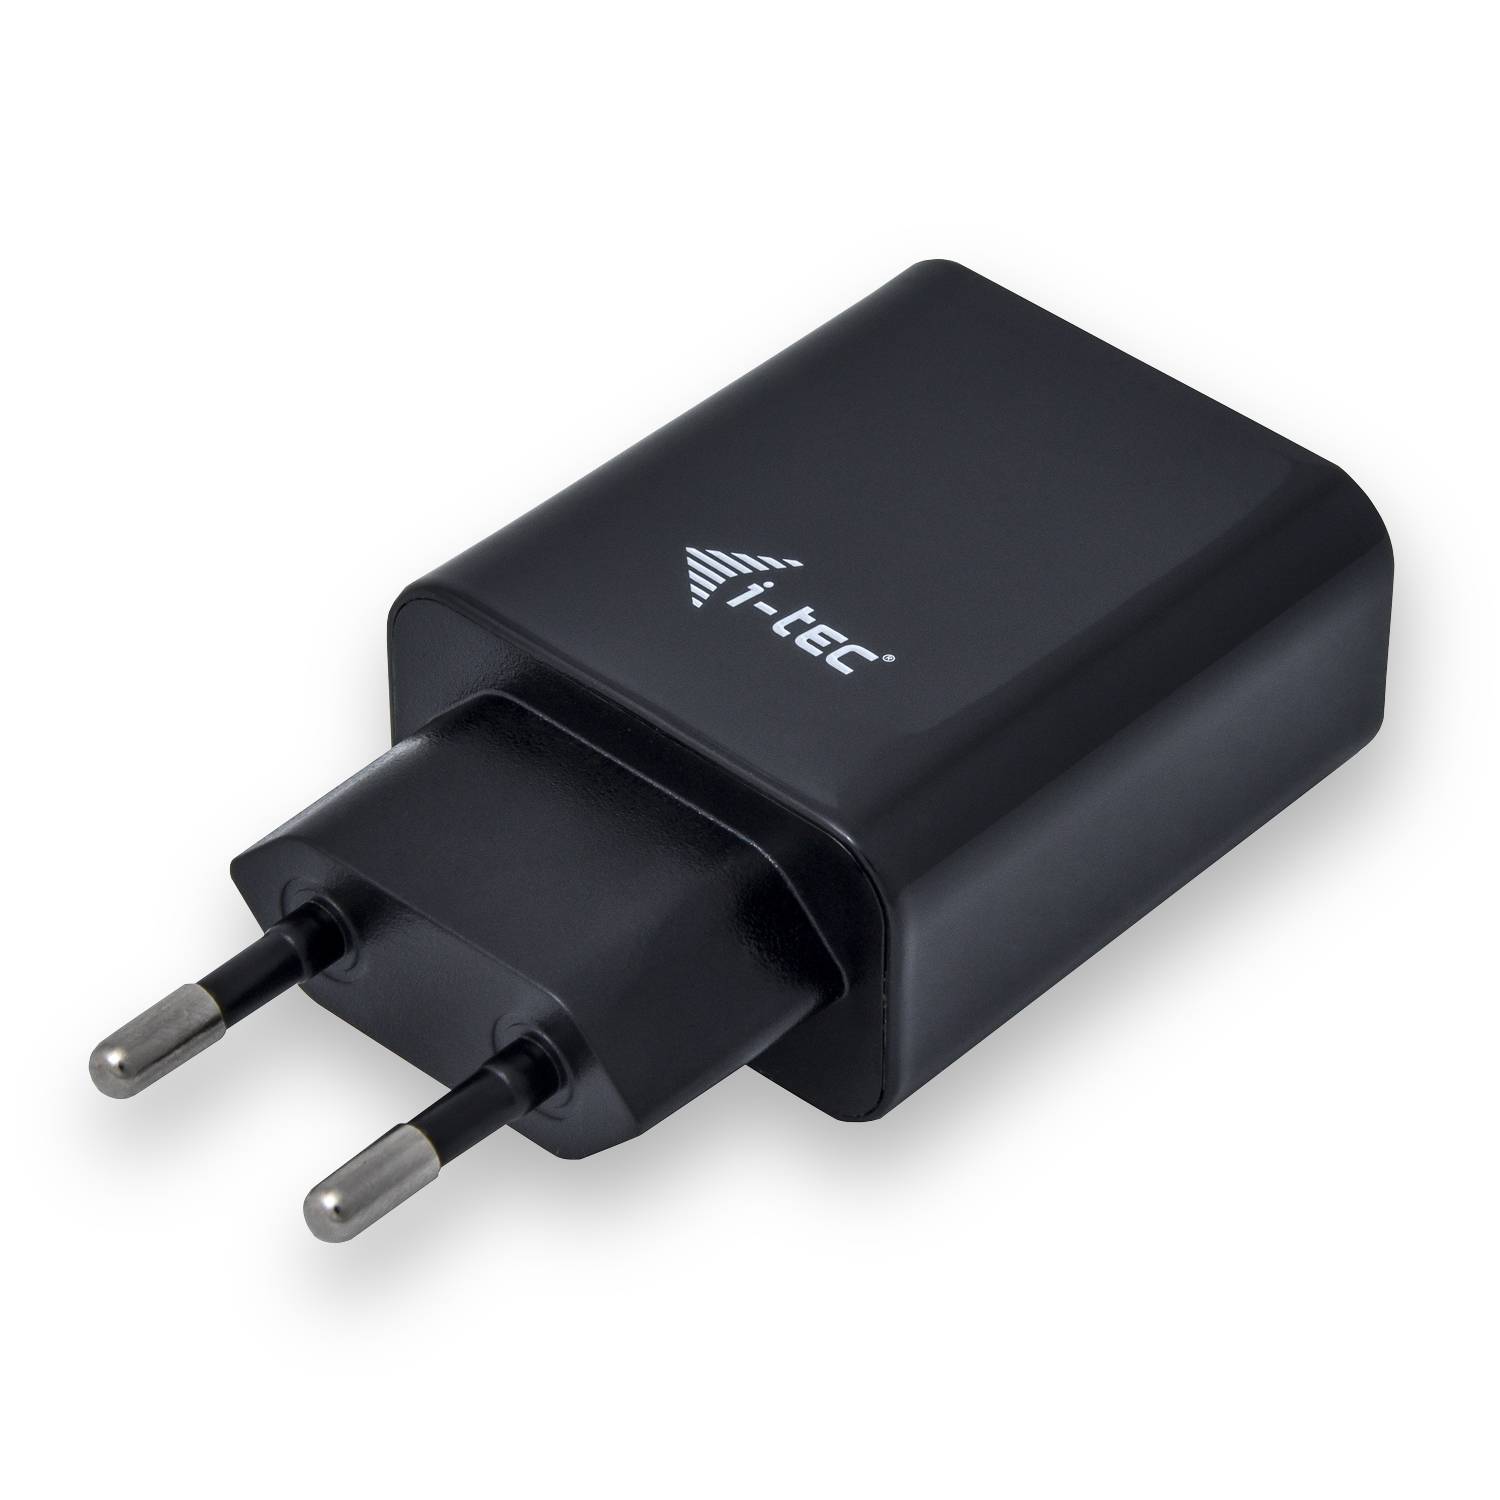 Rca Informatique - image du produit : USB POWER CHARGER 2 PORT 2.4A BLACK EU ONLY